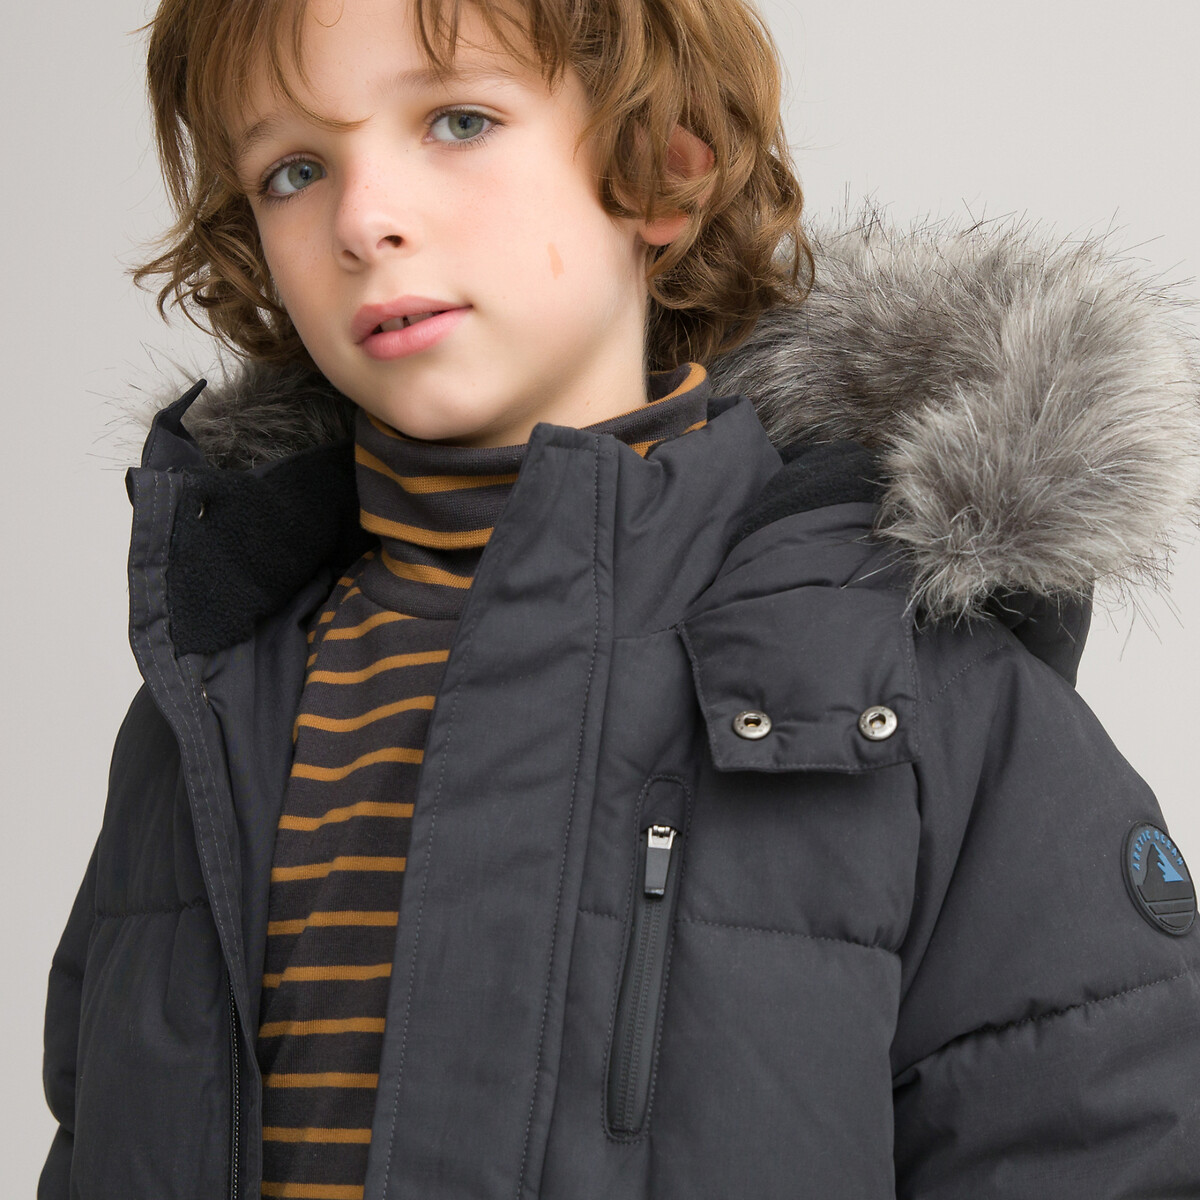 Куртка Стеганая с капюшоном длинная и теплая 3-12 лет 10 лет - 138 см серый